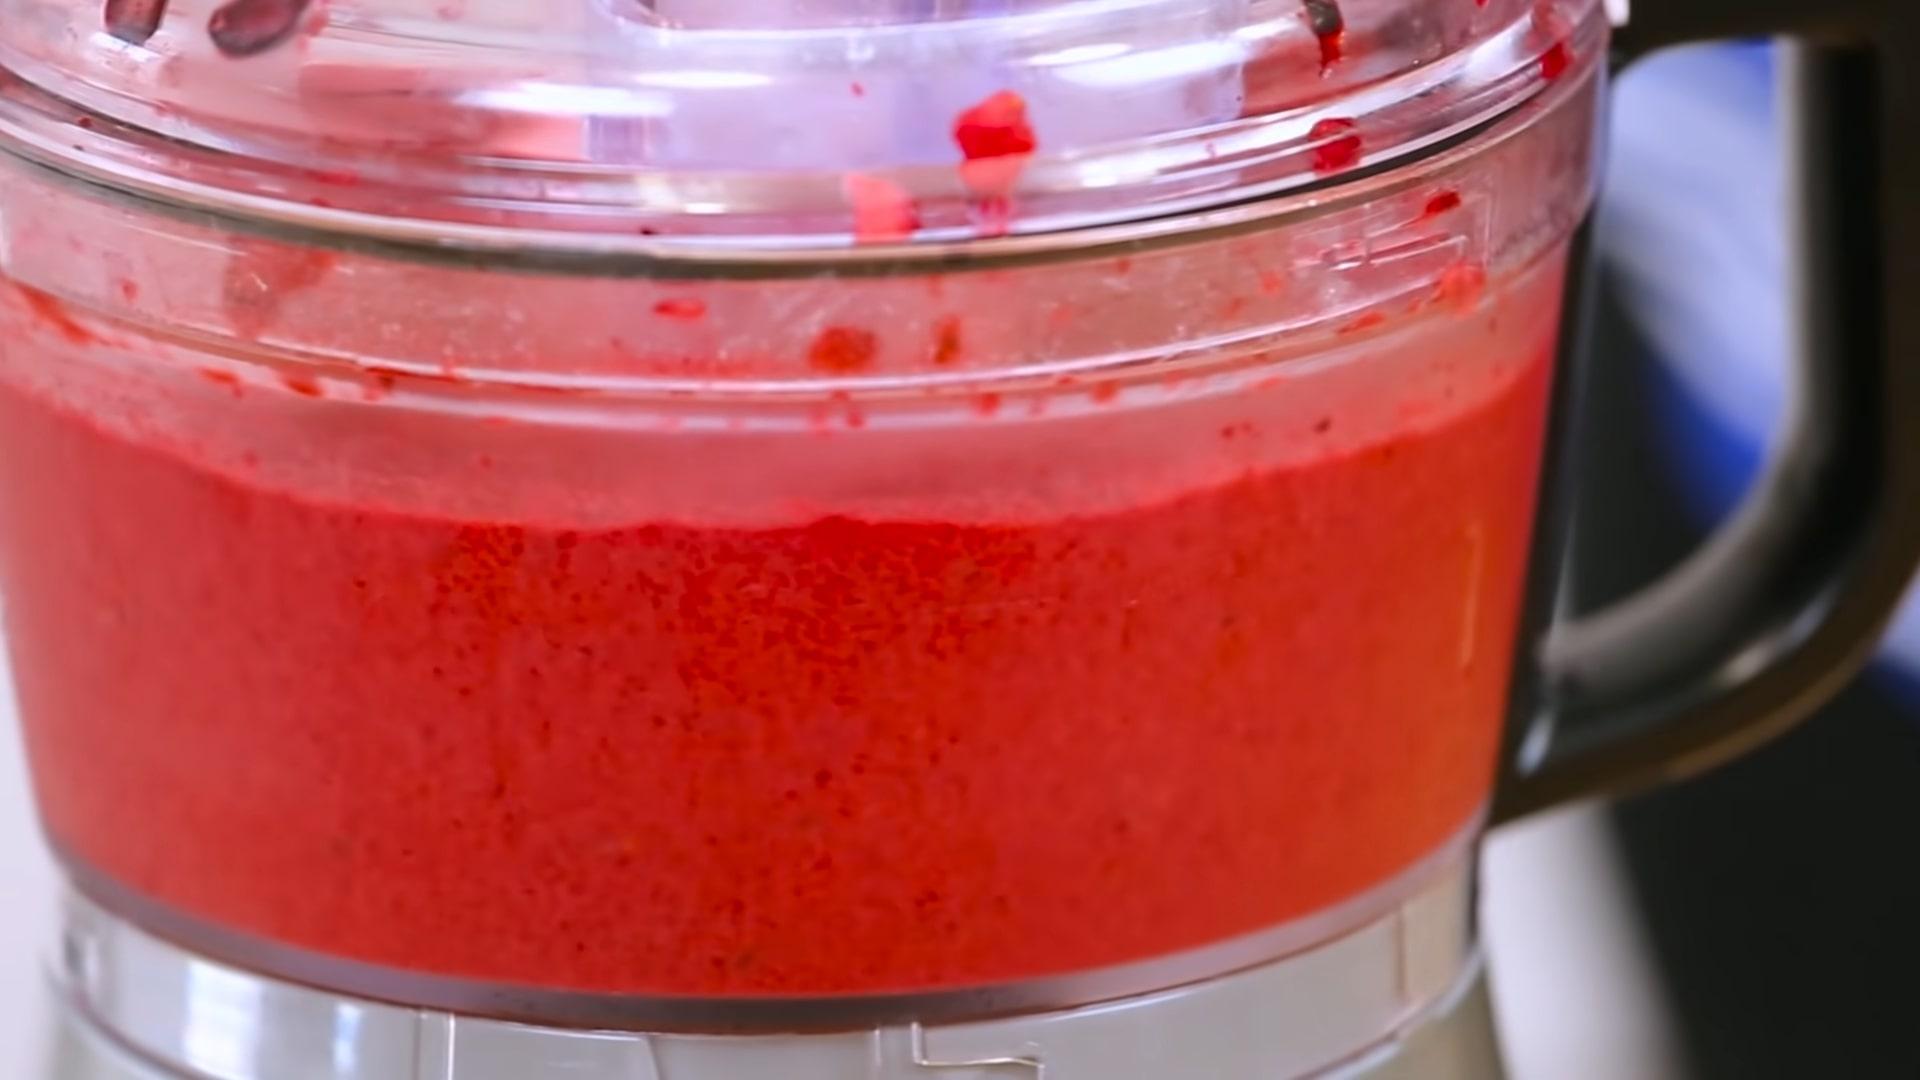 Рецепт - Как приготовить сорбет из замороженных ягод - Шаг 4